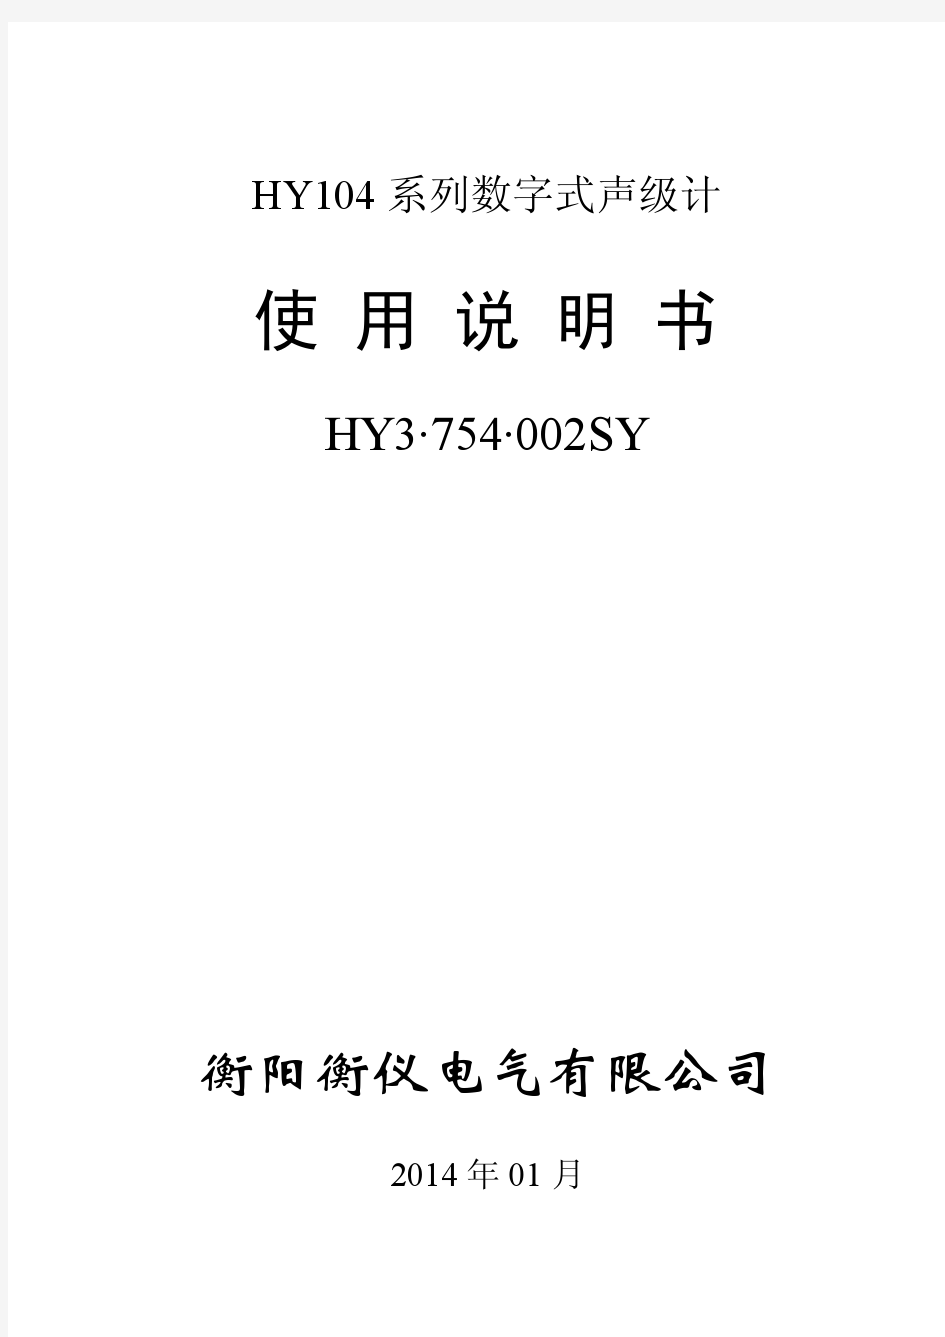 HY104使用说明书蒋发HY3754002SY_V11.5